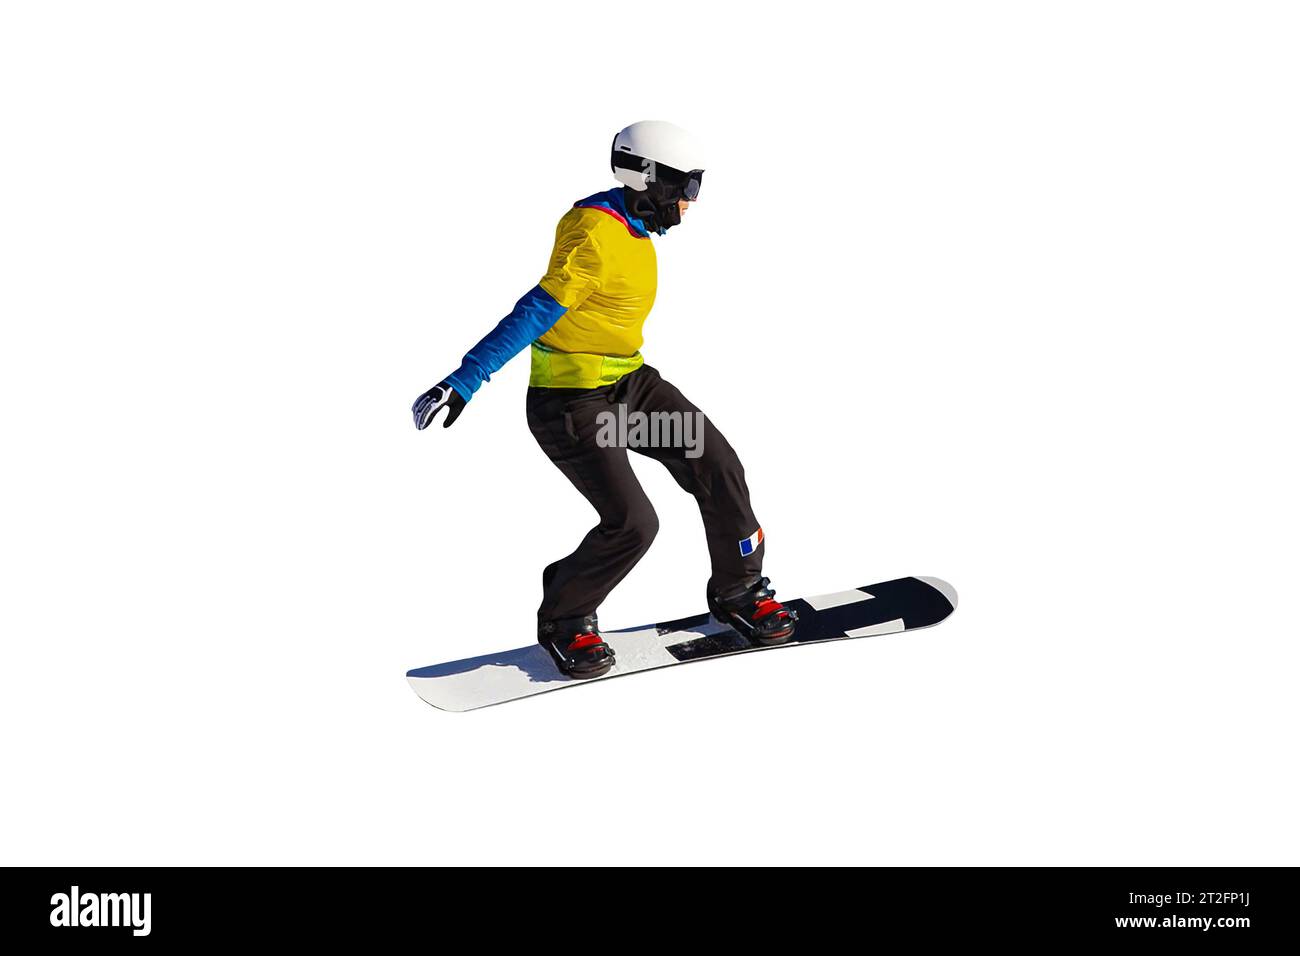 Femme athlète snowboarders dans l'équipe de France sautant des gouttes dans le snowboard isolé sur fond blanc Banque D'Images